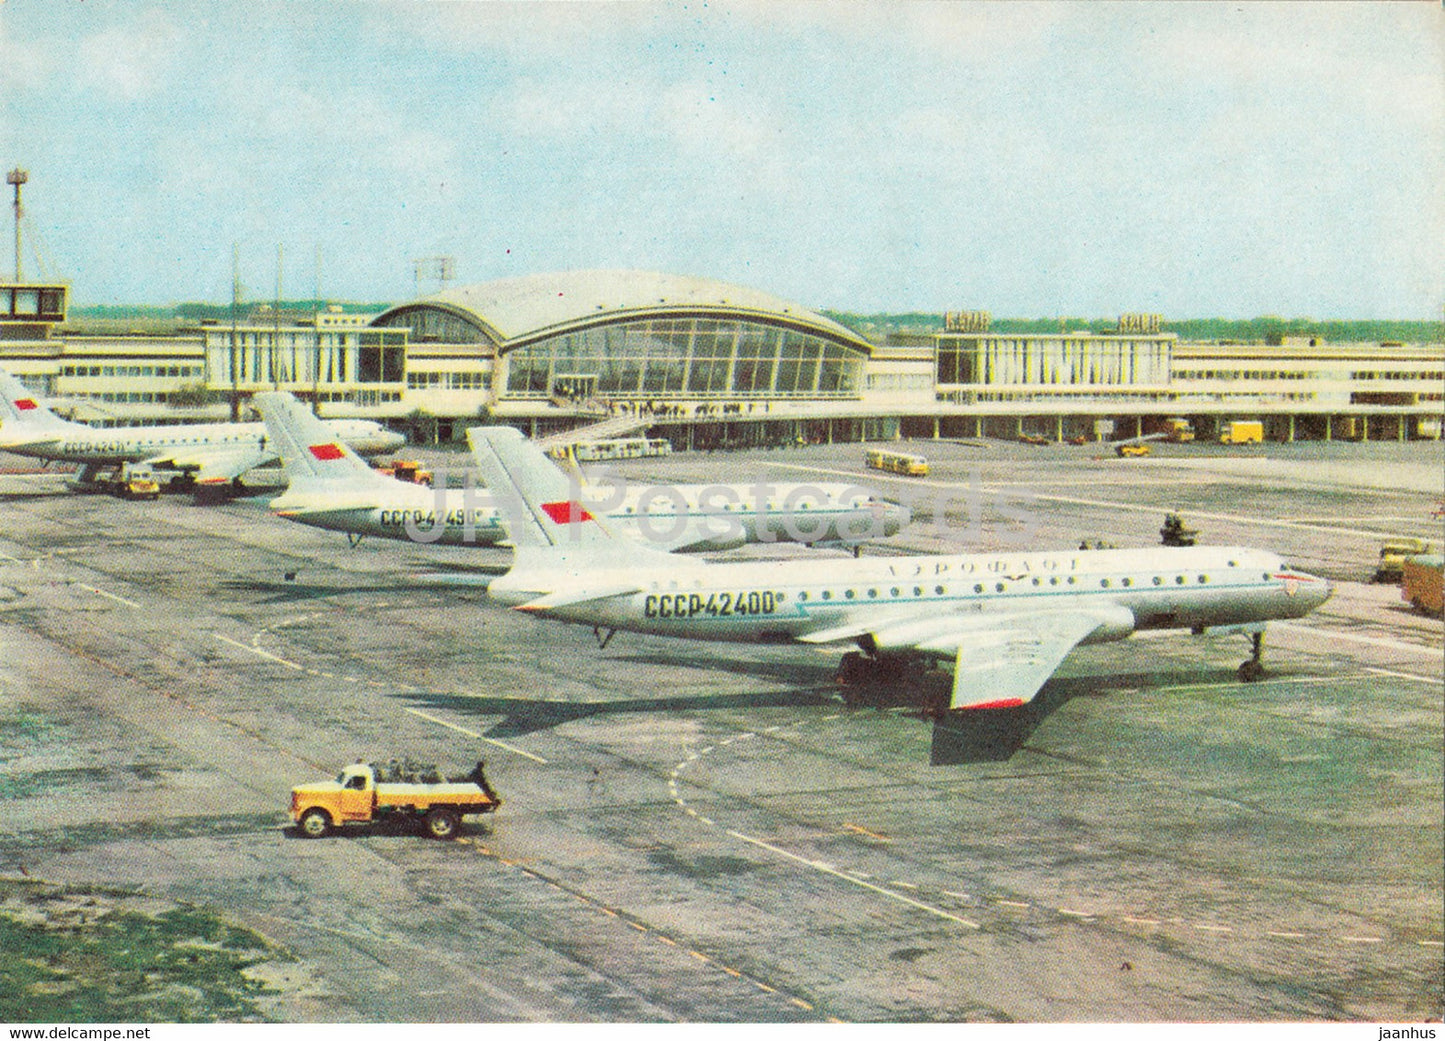 Kyiv - Kiev - Borispil airport - airplane - 1970 - Ukraine USSR - unused - JH Postcards